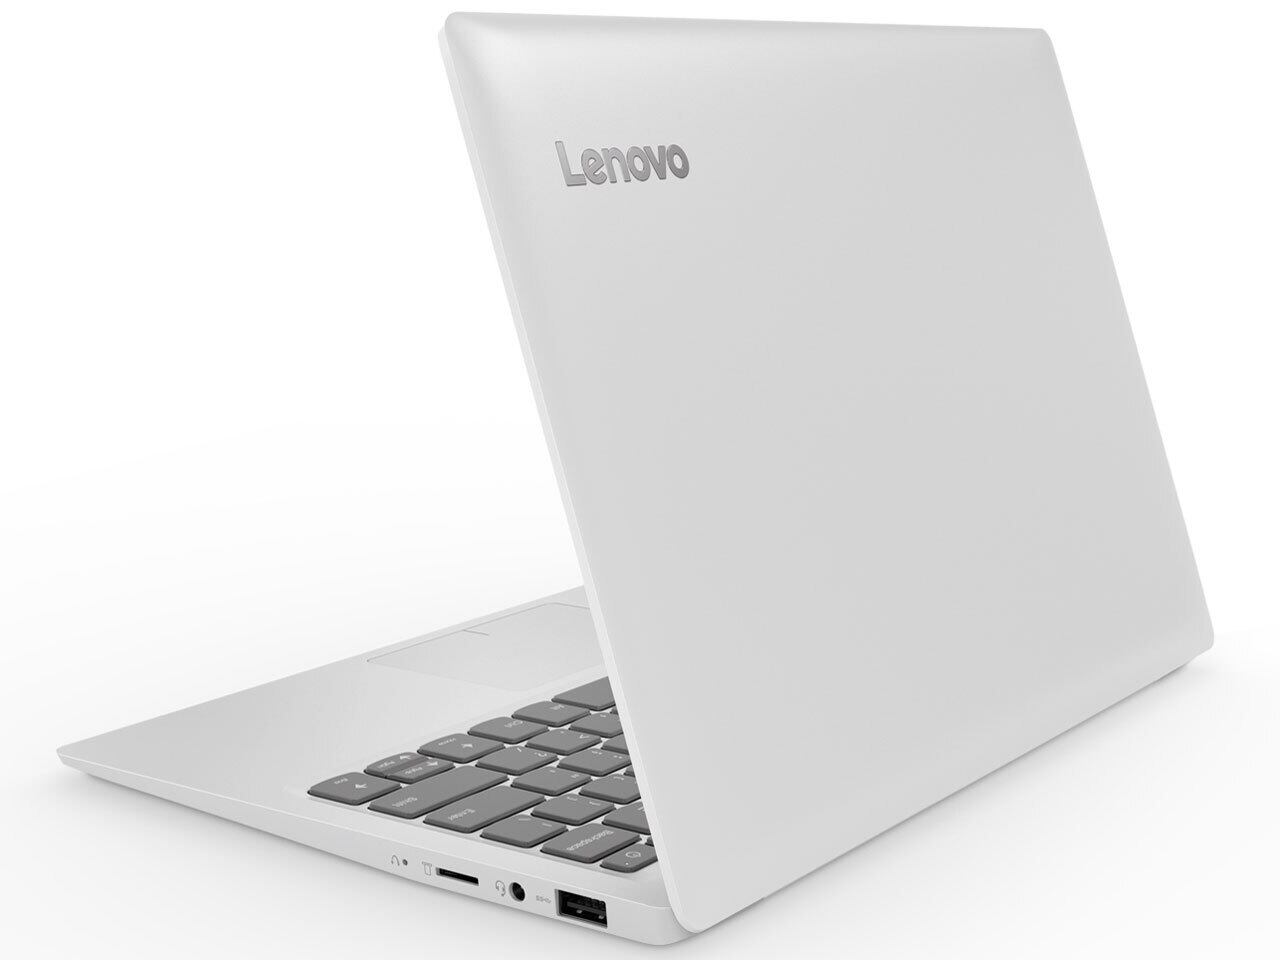 【新品(店頭展示品)】Lenovo ideapad 120S-11IAP 81A400F3JP Win10Proモデル(Celeron N3350  1.1GHz/4GB/eMMC 64GB) | techbarge powered by BASE